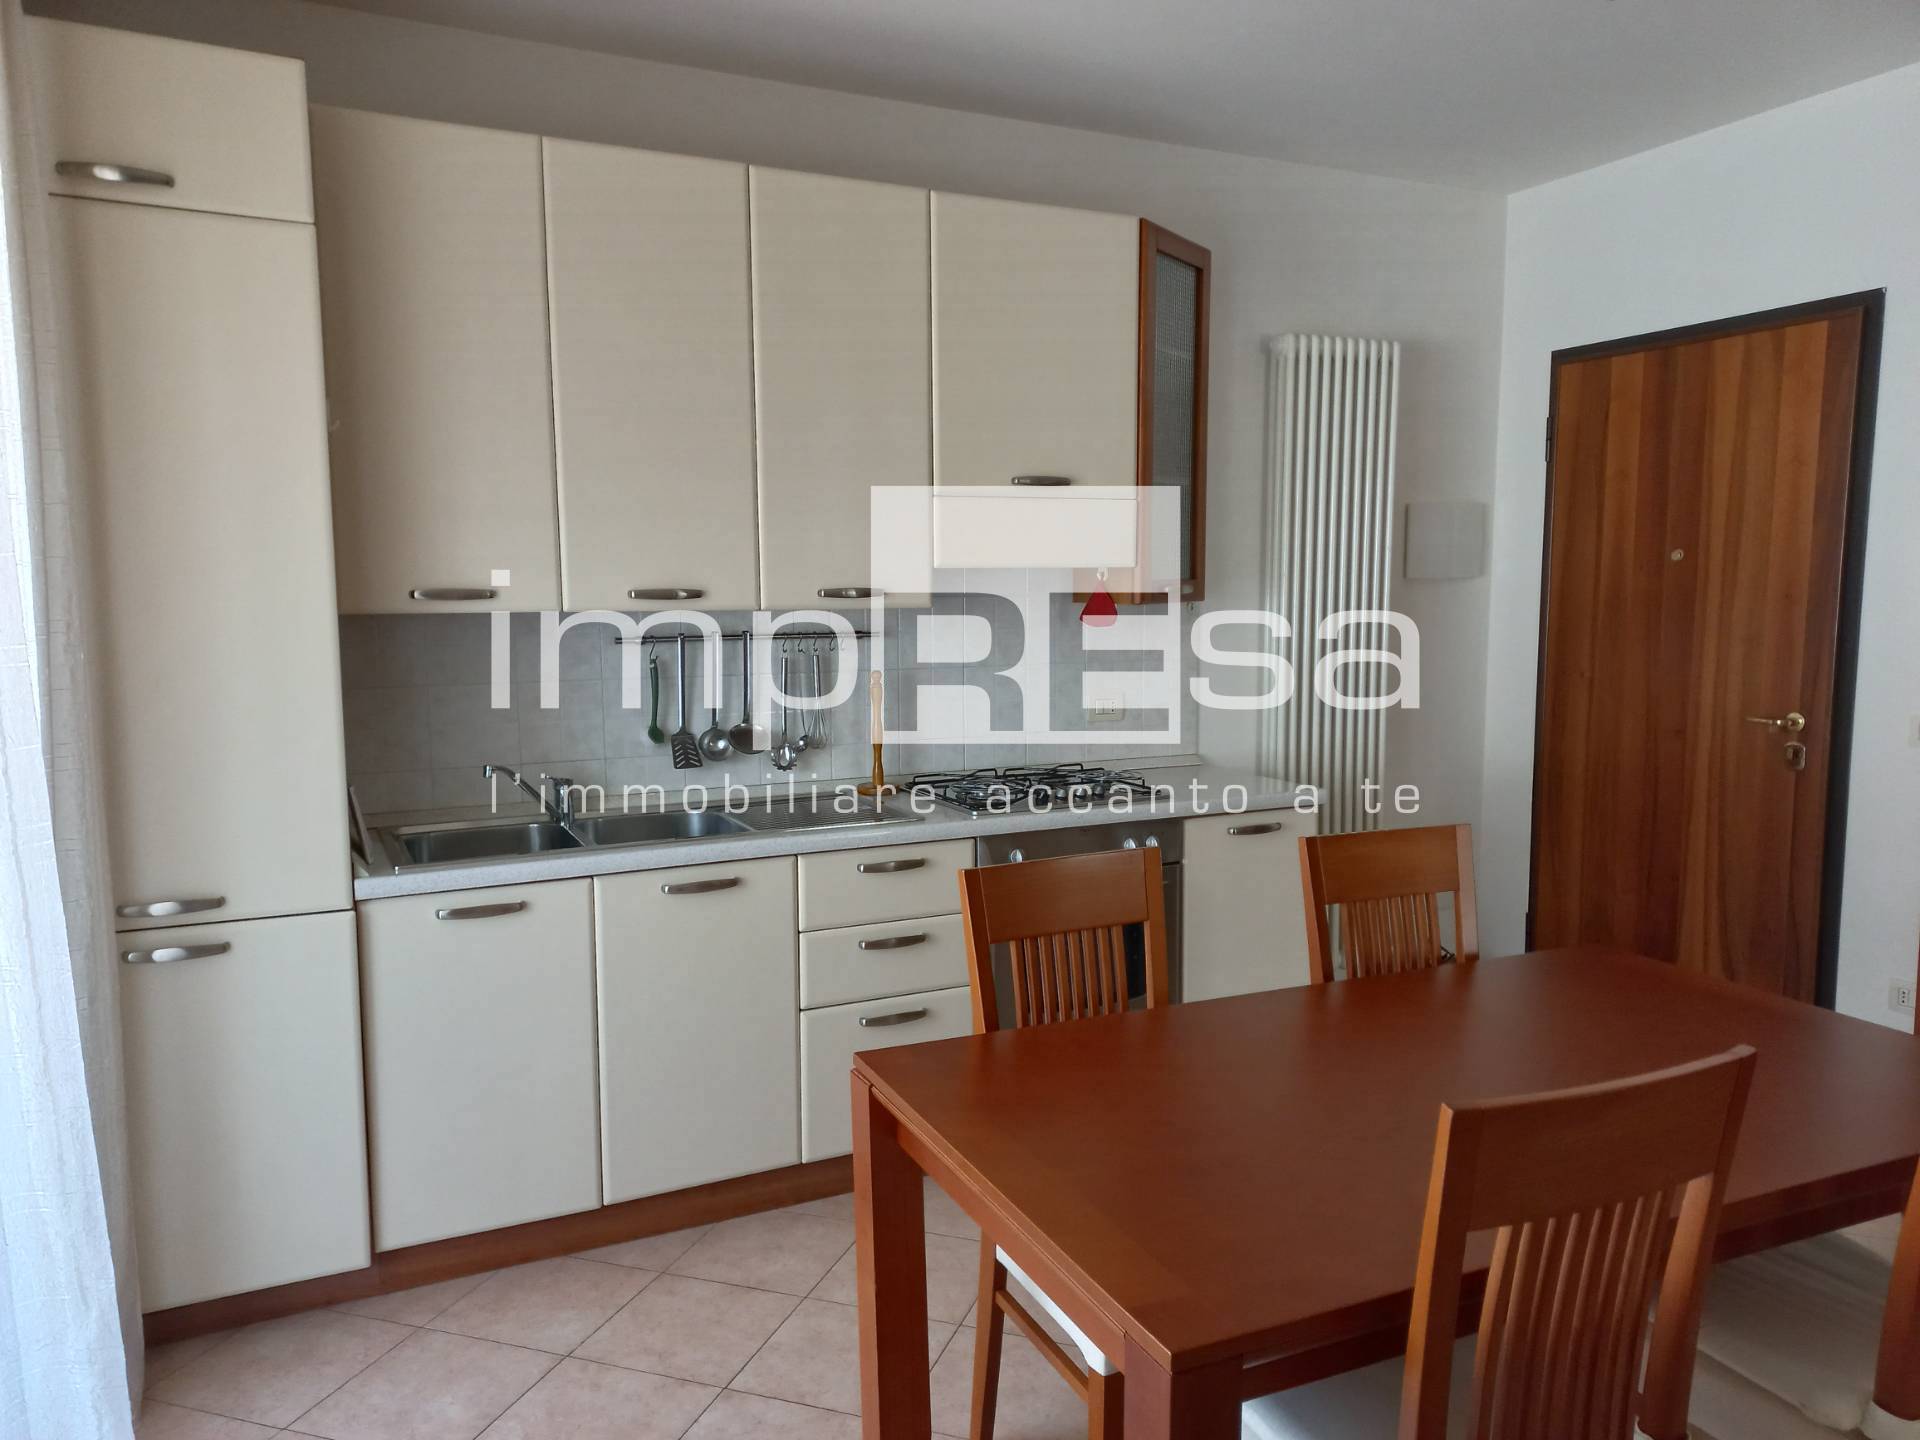 Appartamento in affitto a Silea, 2 locali, zona ago, prezzo € 580 | PortaleAgenzieImmobiliari.it